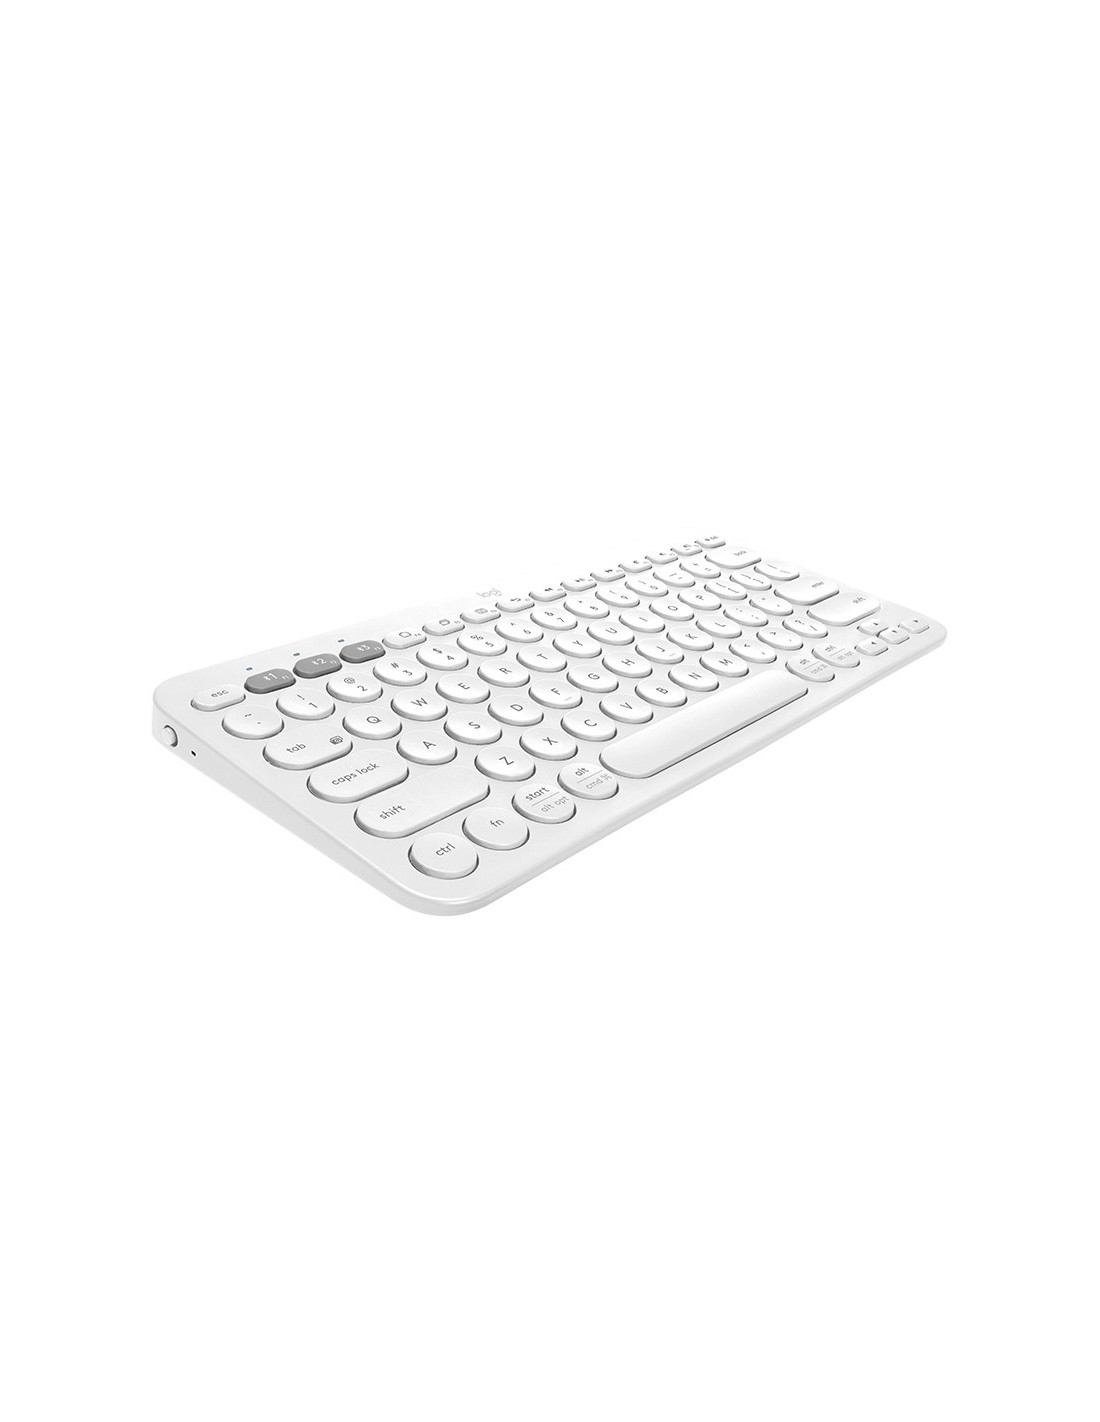 Logitech Wireless Keyboard K380 - White (Anglais)